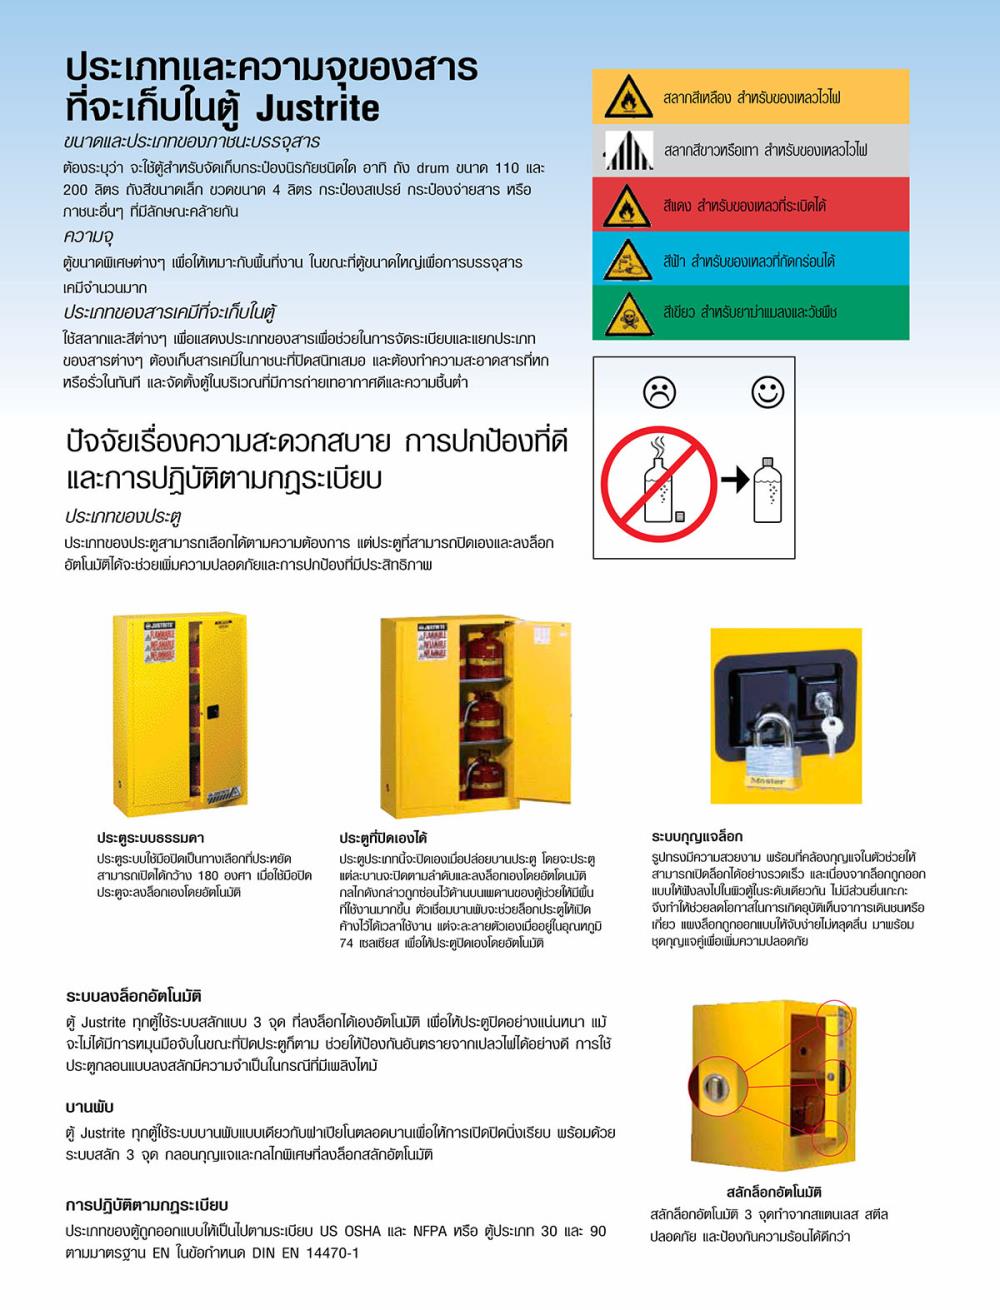 ตู้เก็บสารเคมีอันตรายชนิดไวไฟ (Safety Cabinet For Flammables)